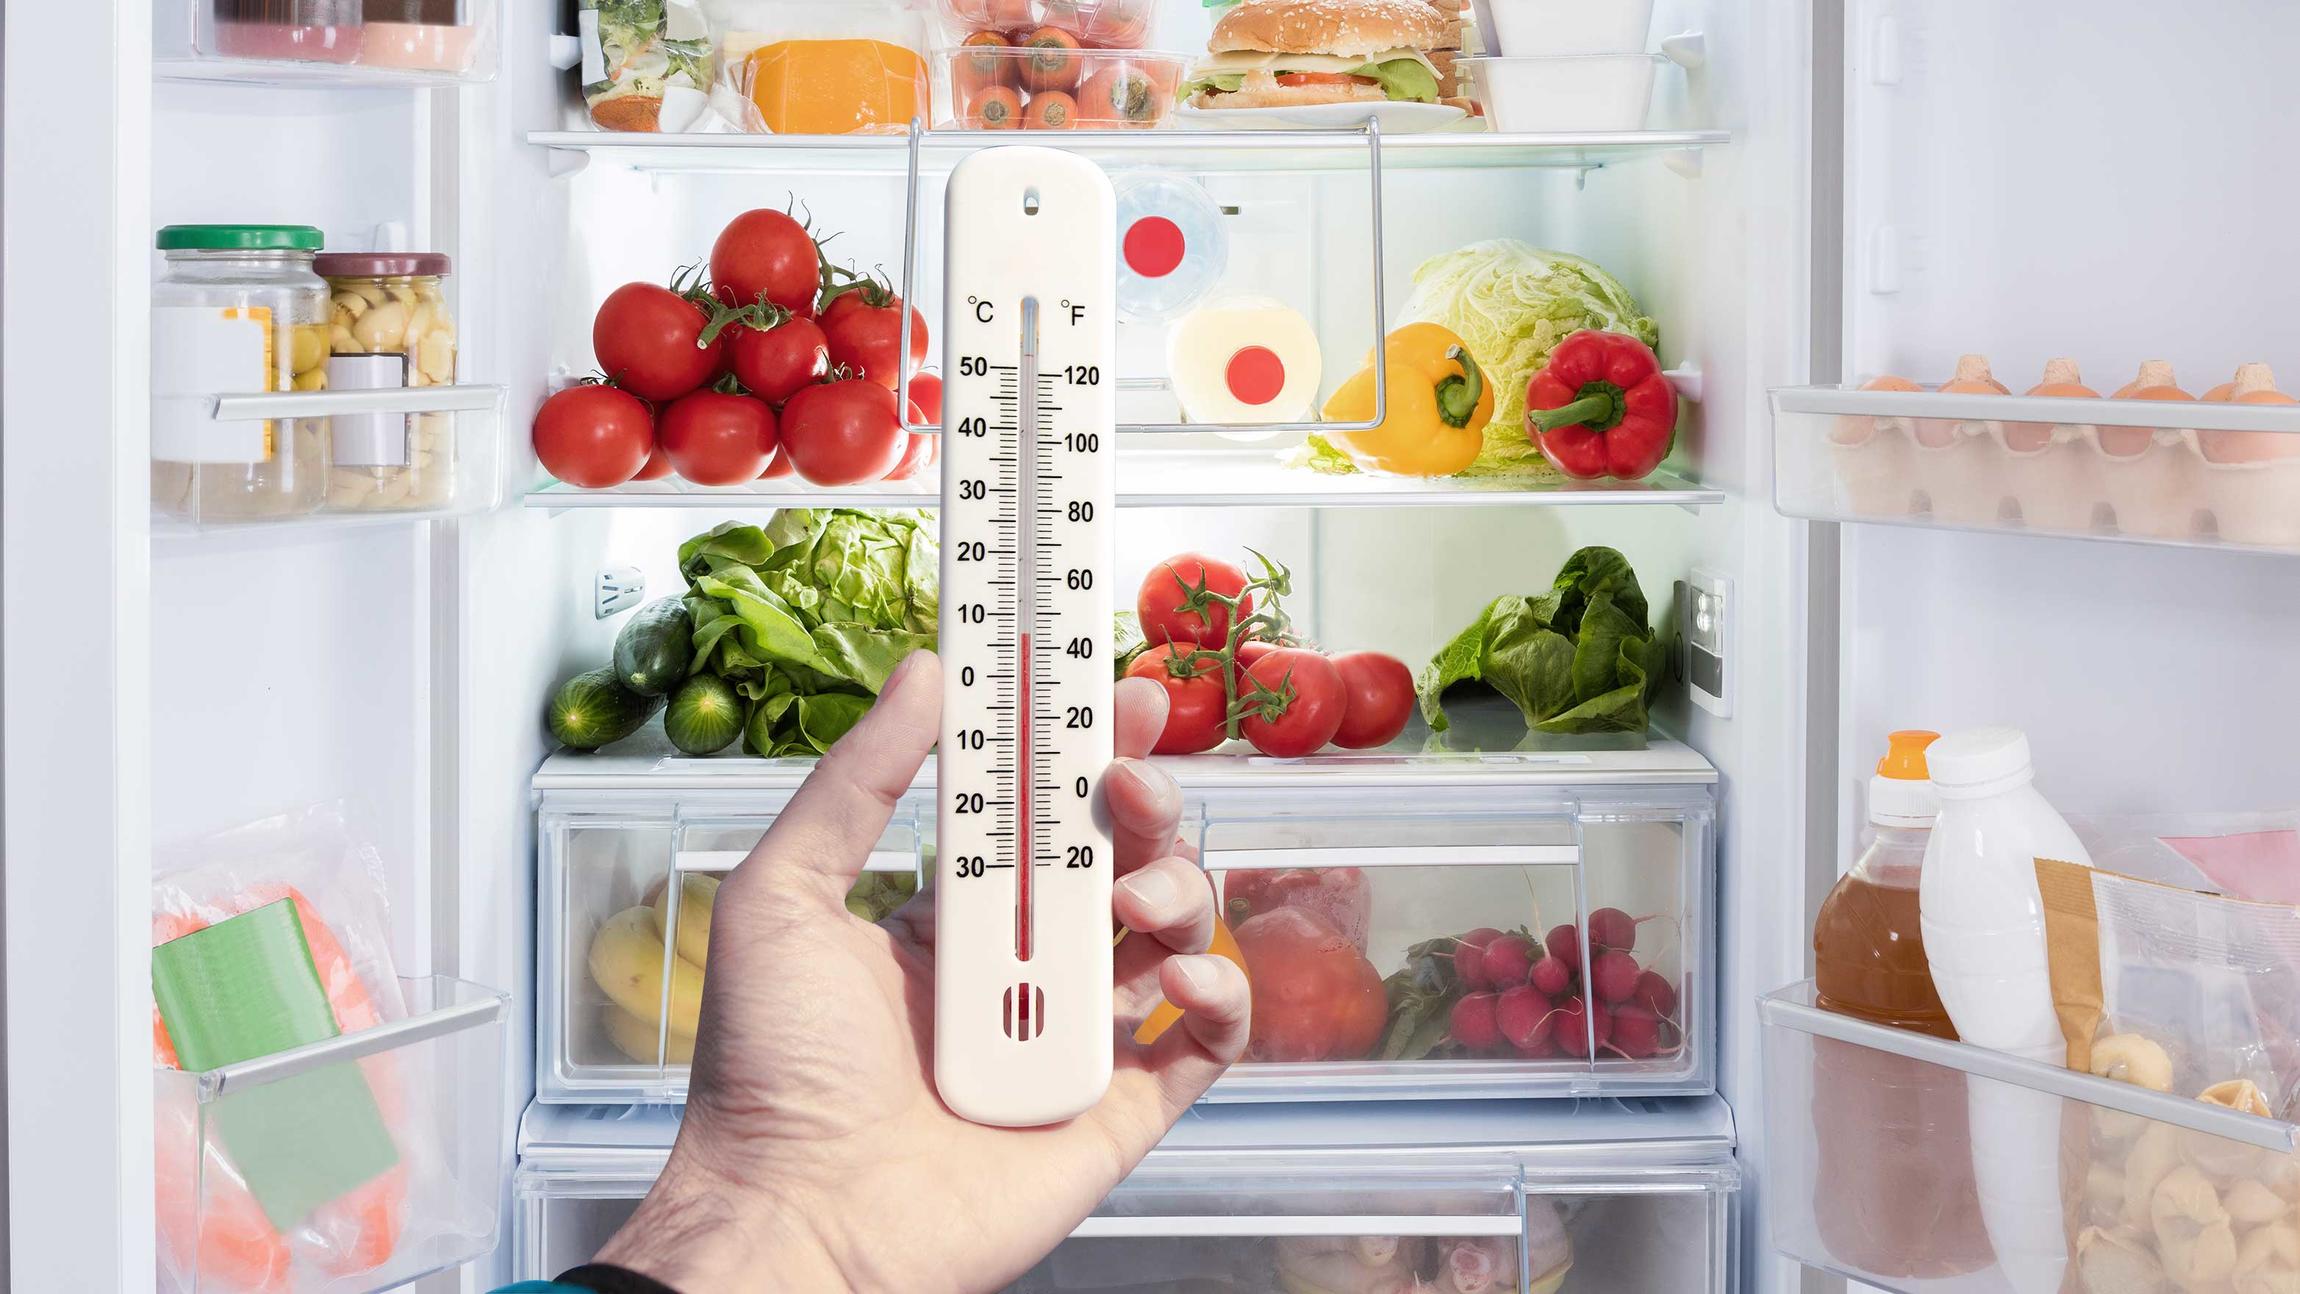 voldtage klatre melodisk Tag temperaturen på dit køleskab, skru ned og giv dine madvarer længere  levetid | Samvirke